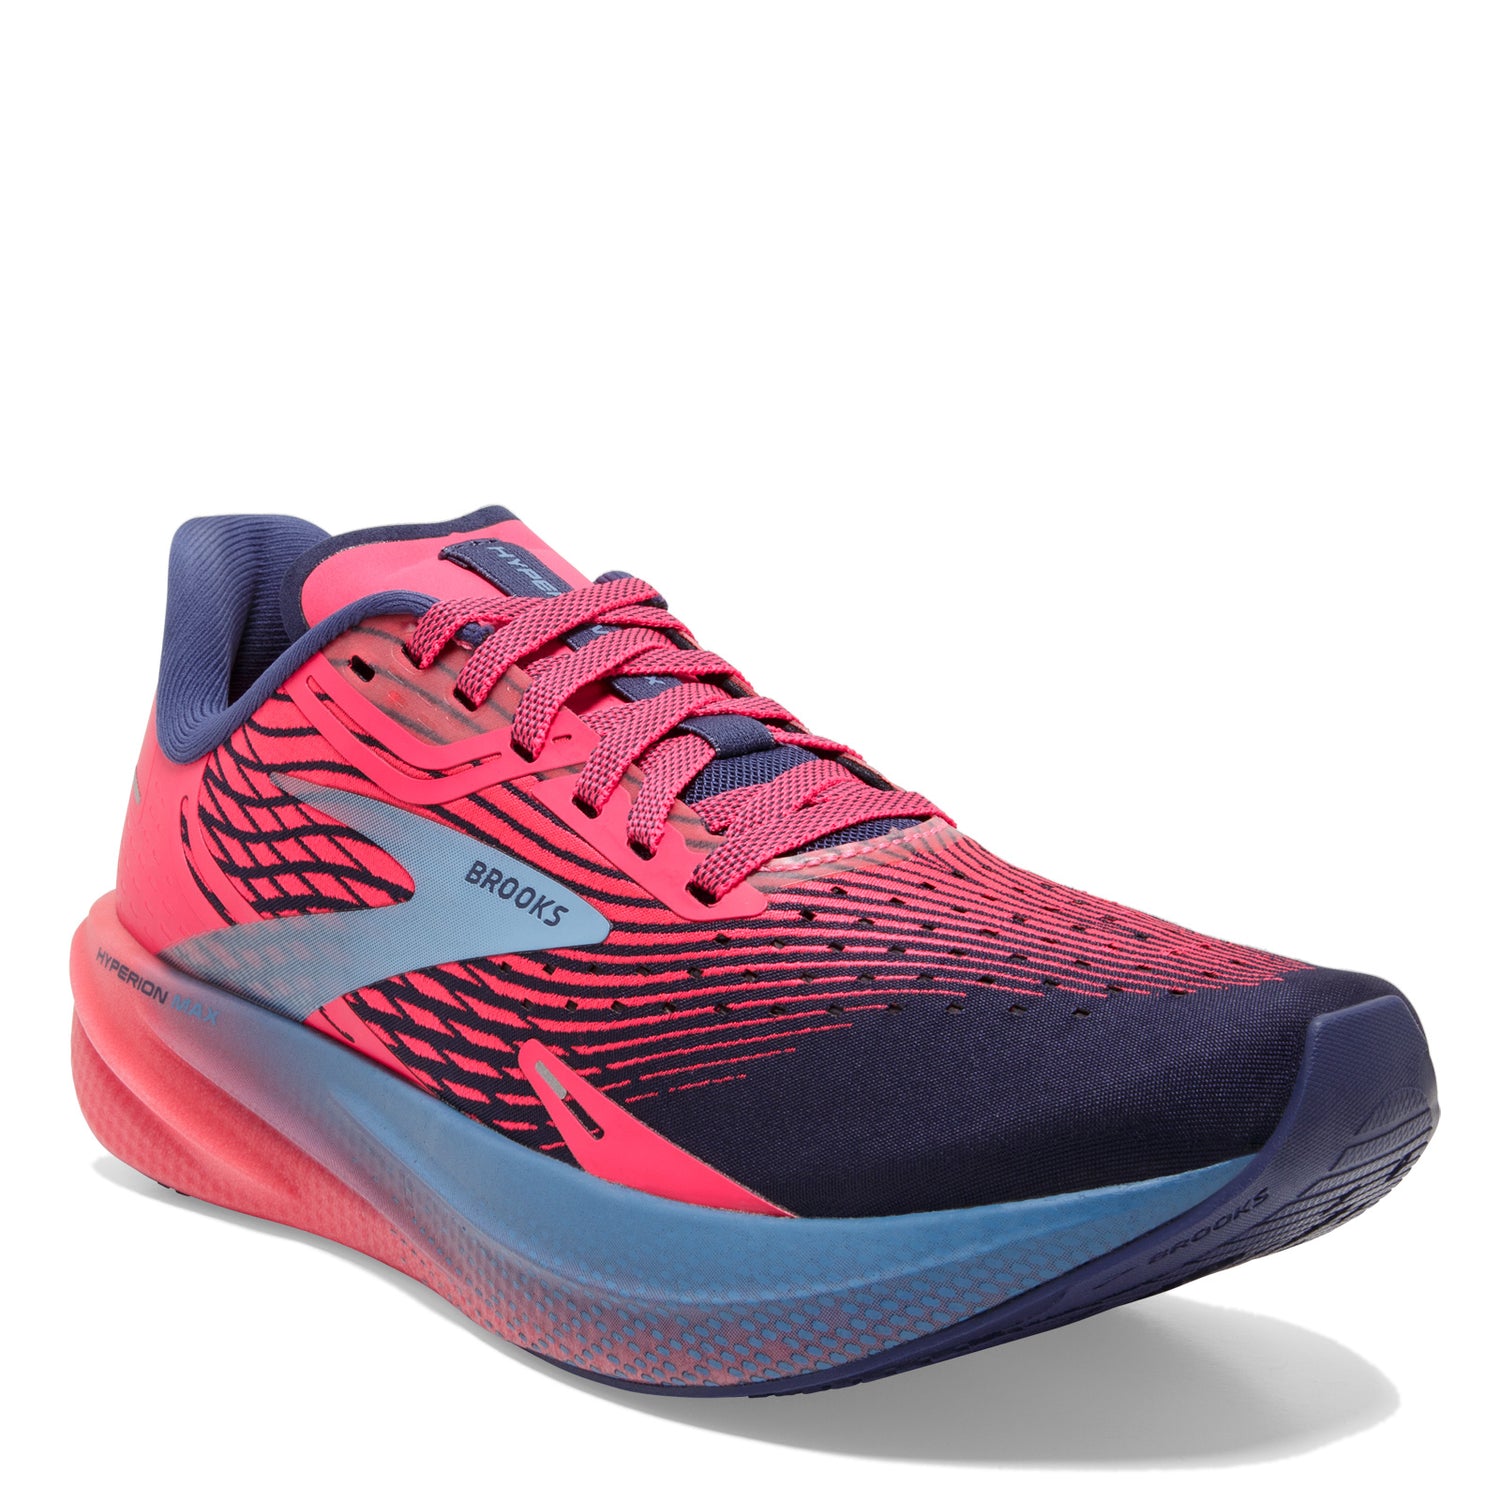 Peltz Shoes  Women's Brooks Hyperion Max Running Shoe Pink/Cobalt/Bliss 120377 1B 659